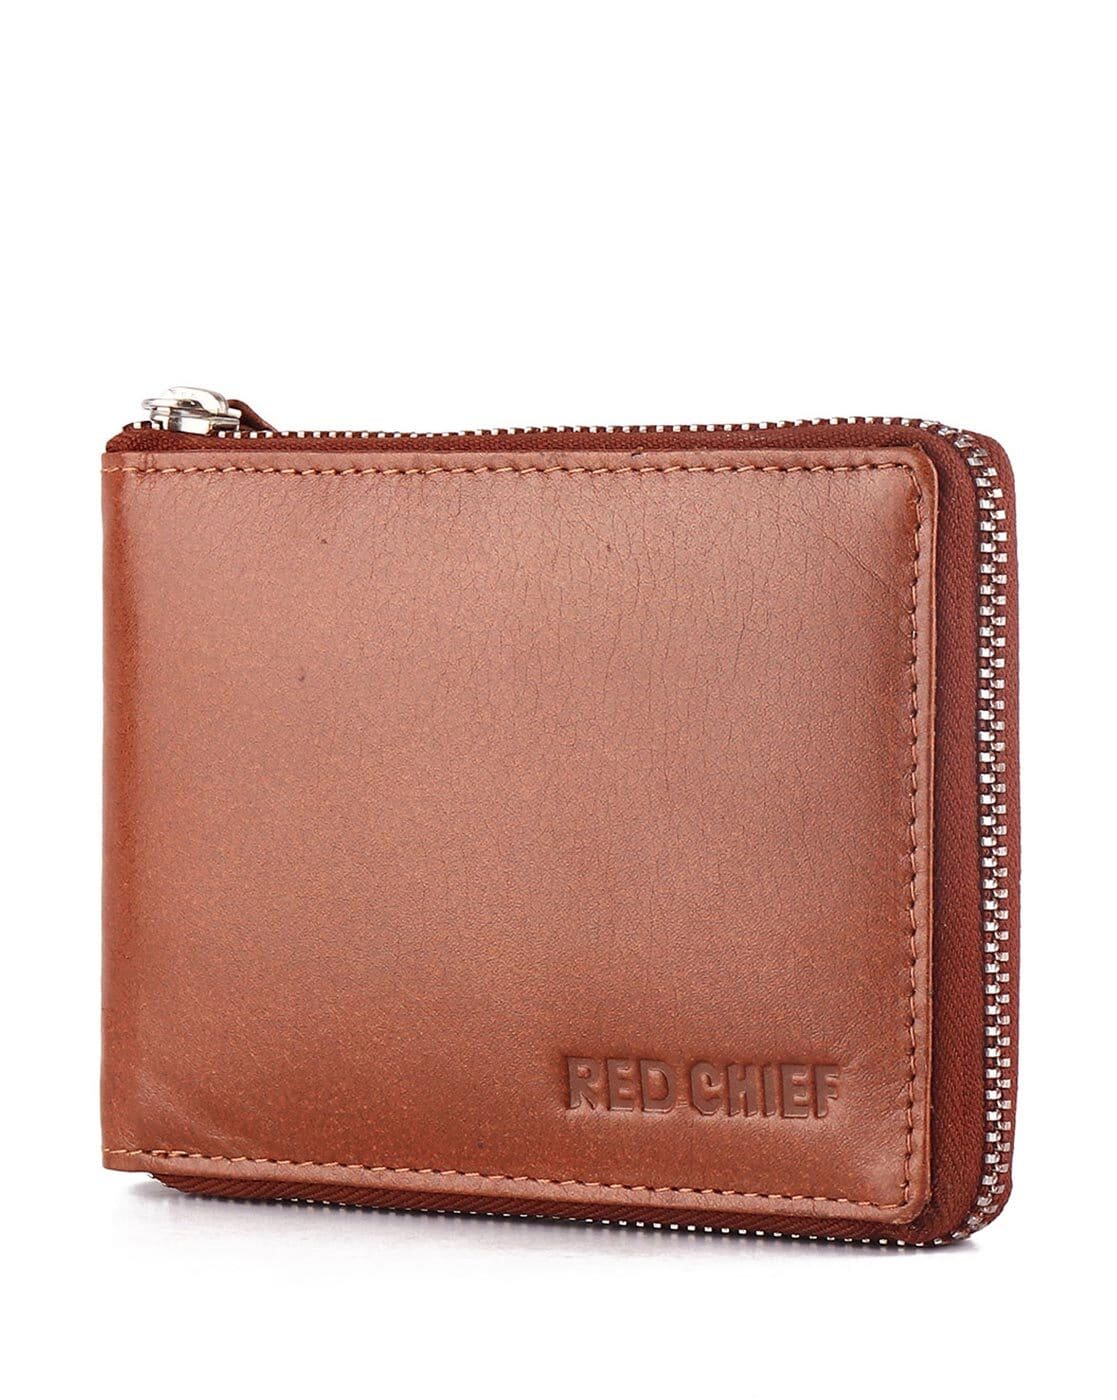 Leather Hand Bag at Rs 1500/piece | चमड़े का फैशन हैंडबैग in Kanpur | ID:  14537291533